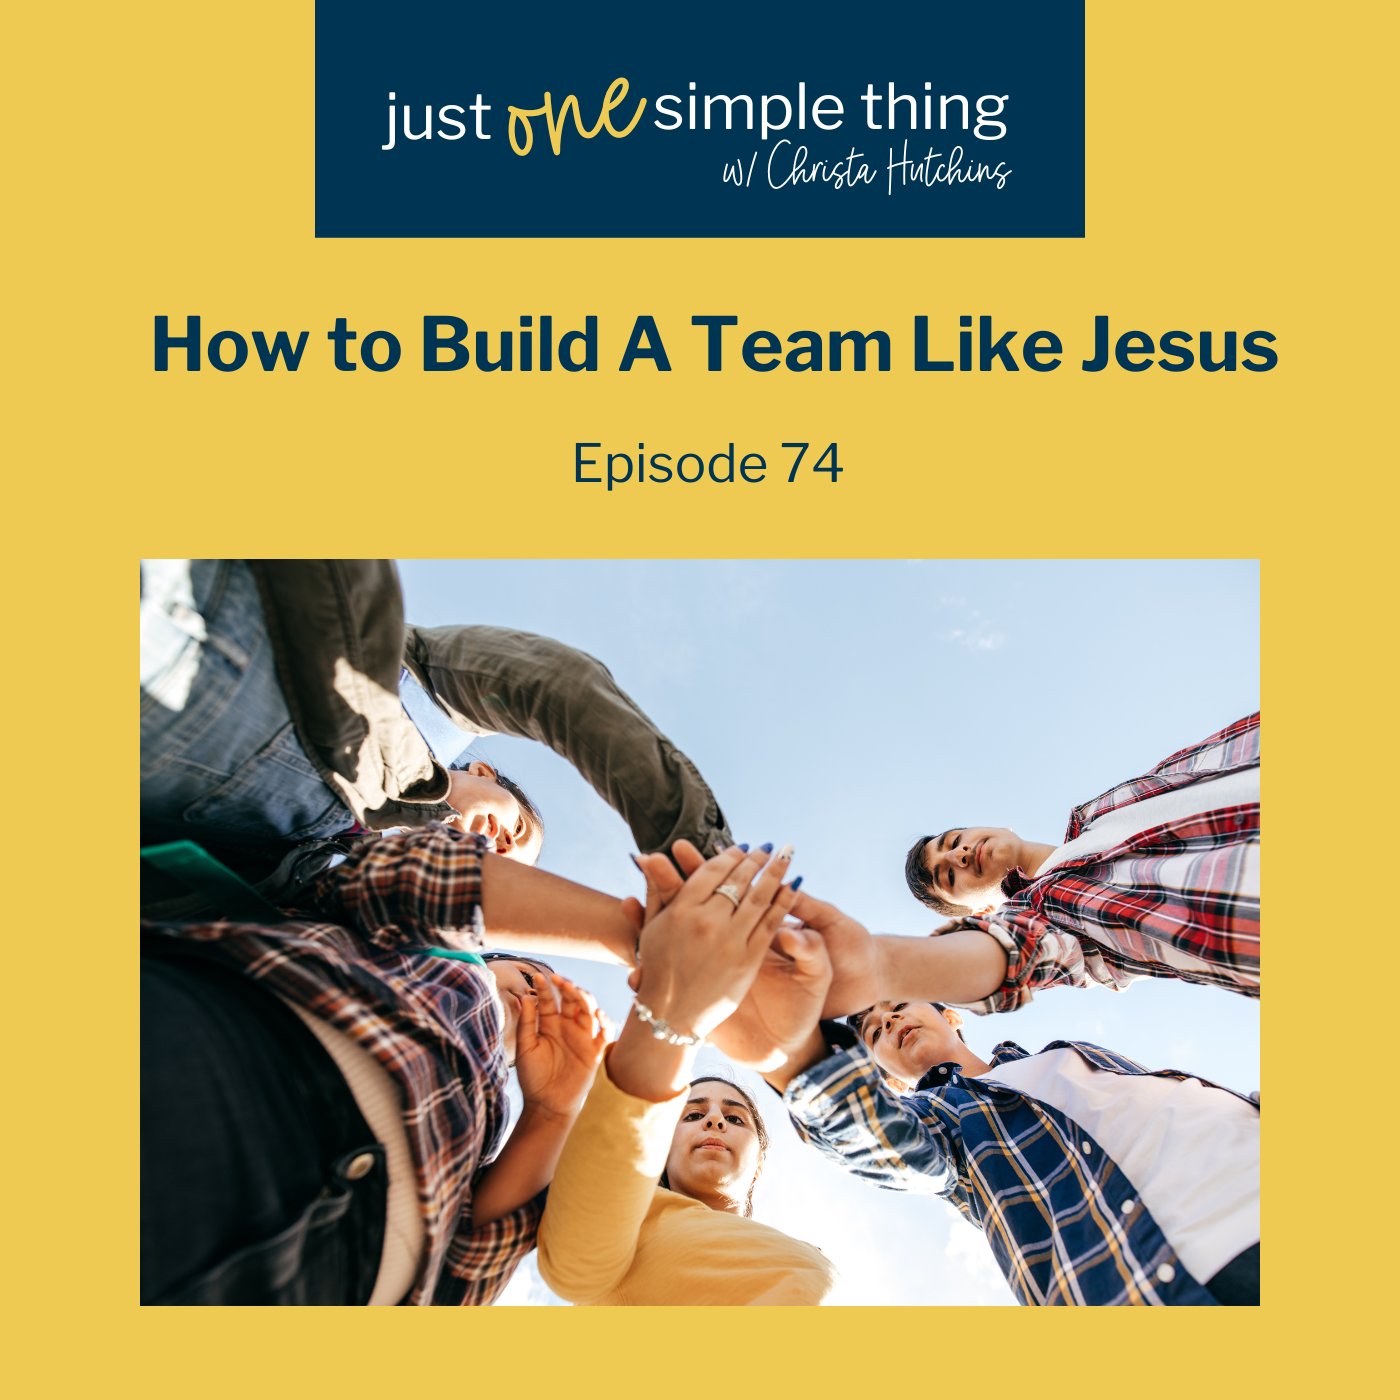 How to Build a Team Like Jesus